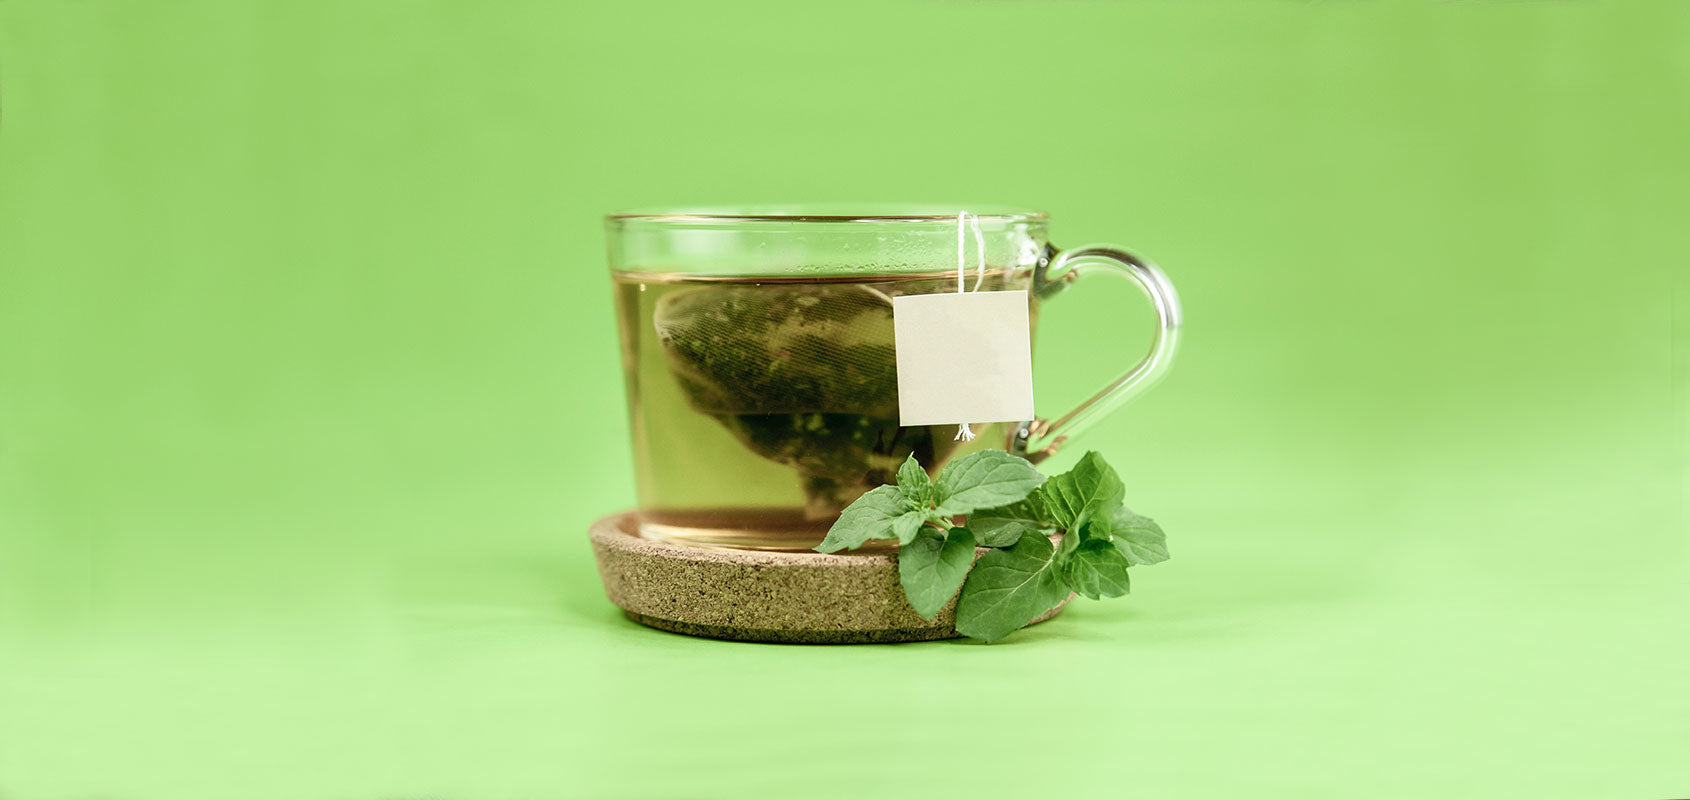 durchsichtige Tasse grüner Tee vor hellgrünem Hintergrund